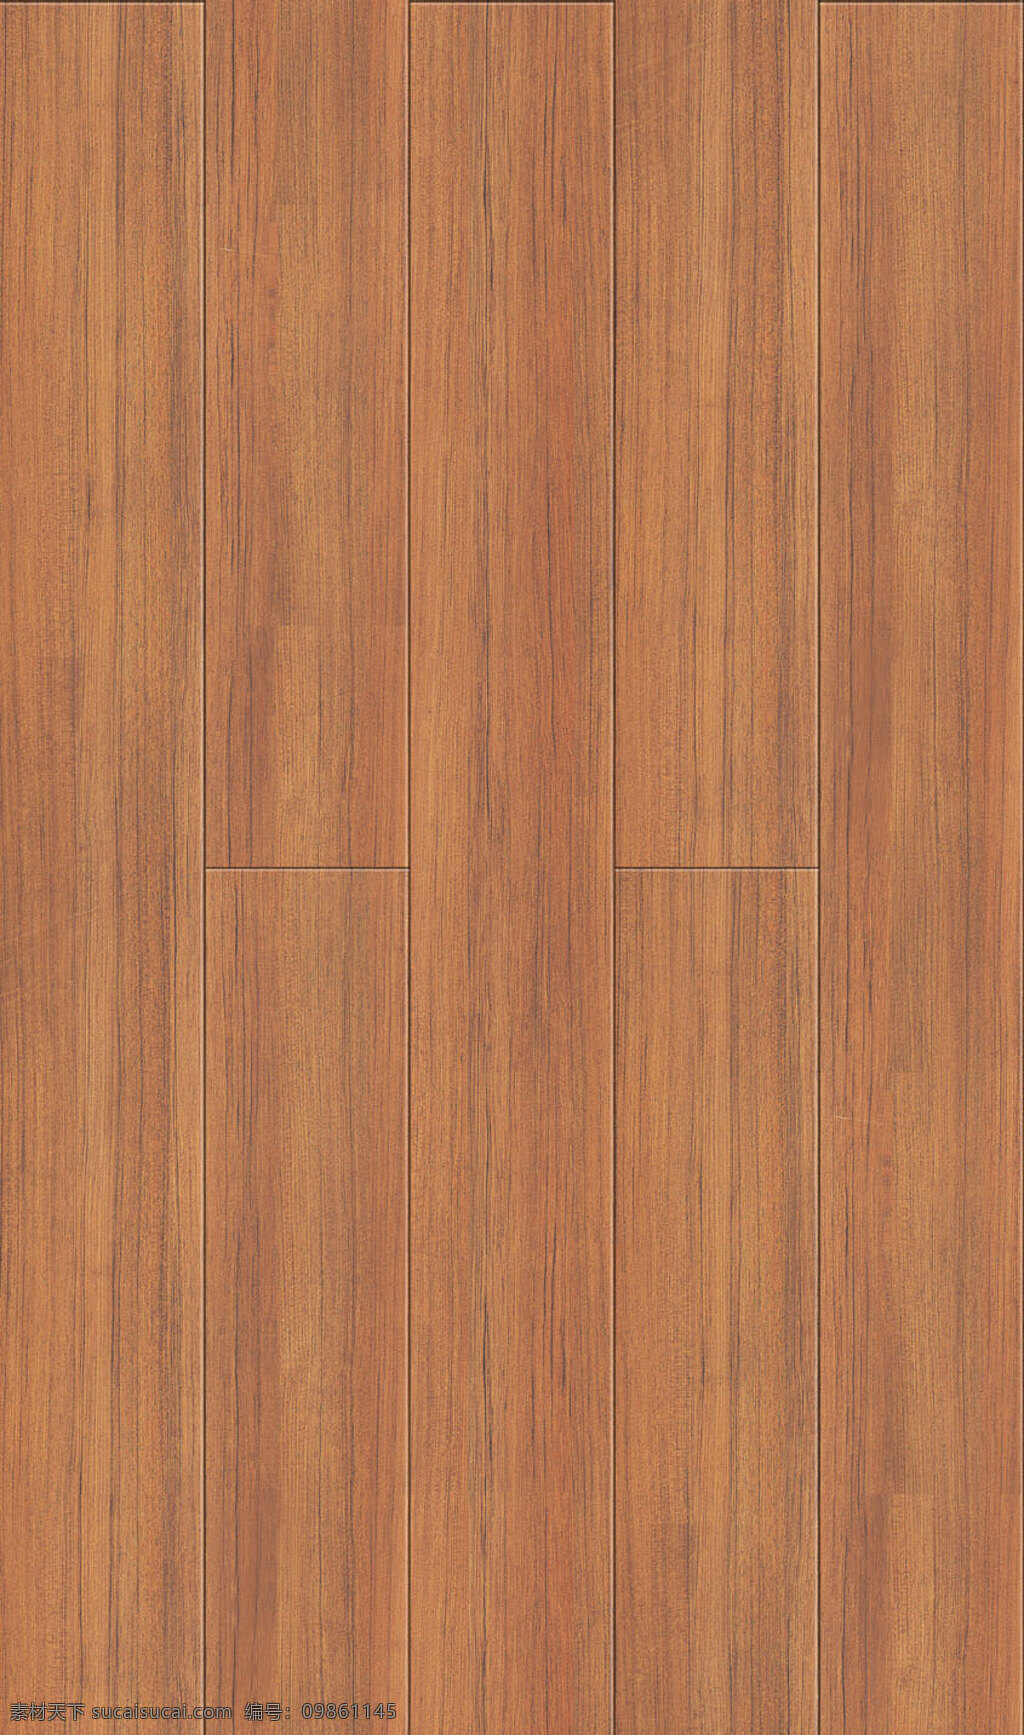 51 木地板 贴图 室内设计 木材贴图 木地板贴图 木地板效果图 木地板材质 地板设计素材 装饰素材 室内装饰用图